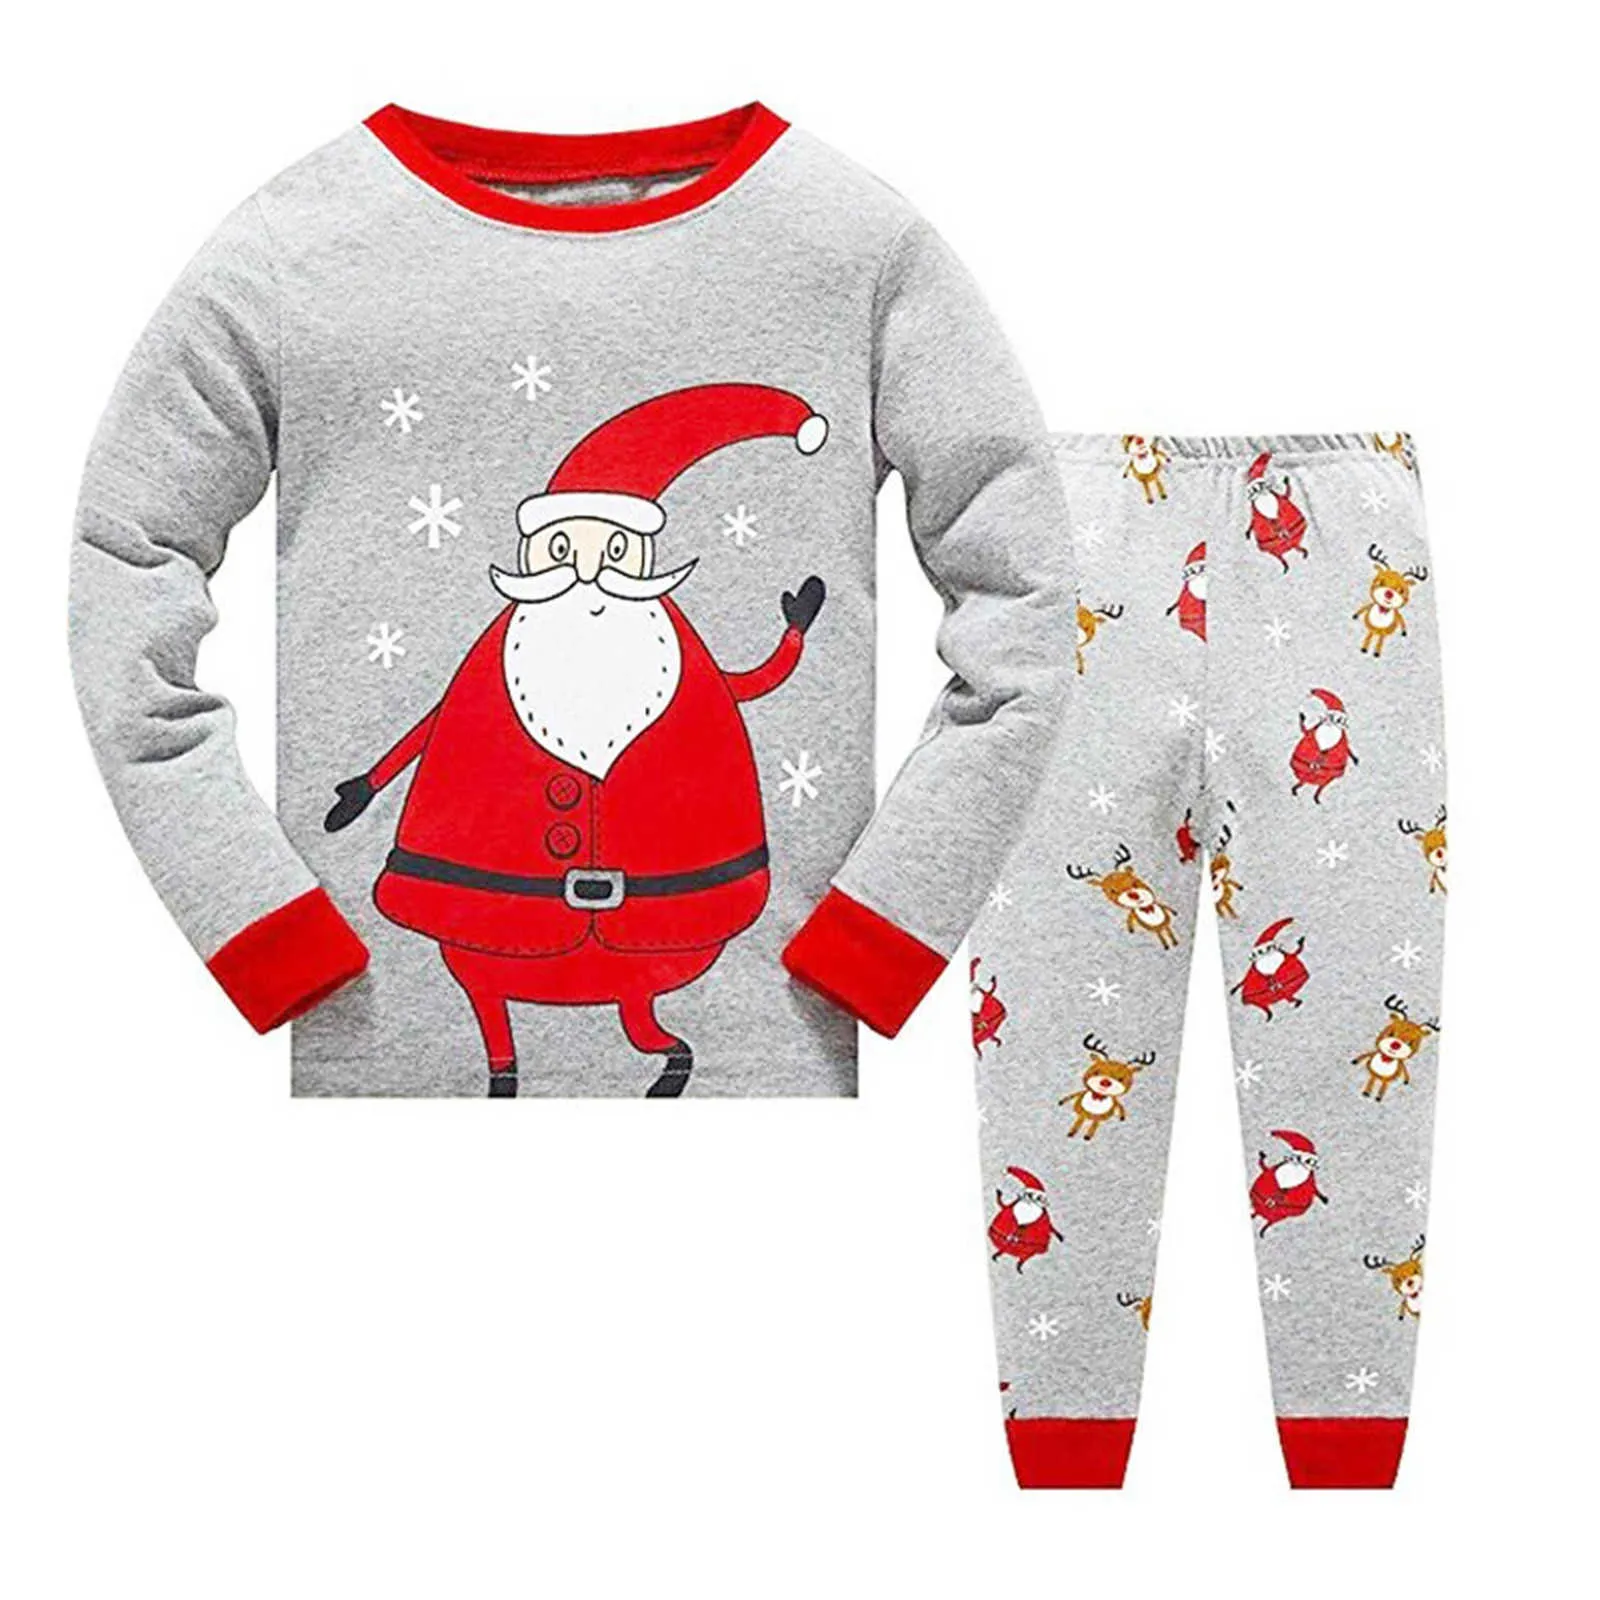 Nya Barn Jul Pyjamas Kids Santa Claus Sleepwear Baby Animal Pyjamas Boys Girls Nightwear Chilld Pijamas Sets 2021 Försäljning G1023